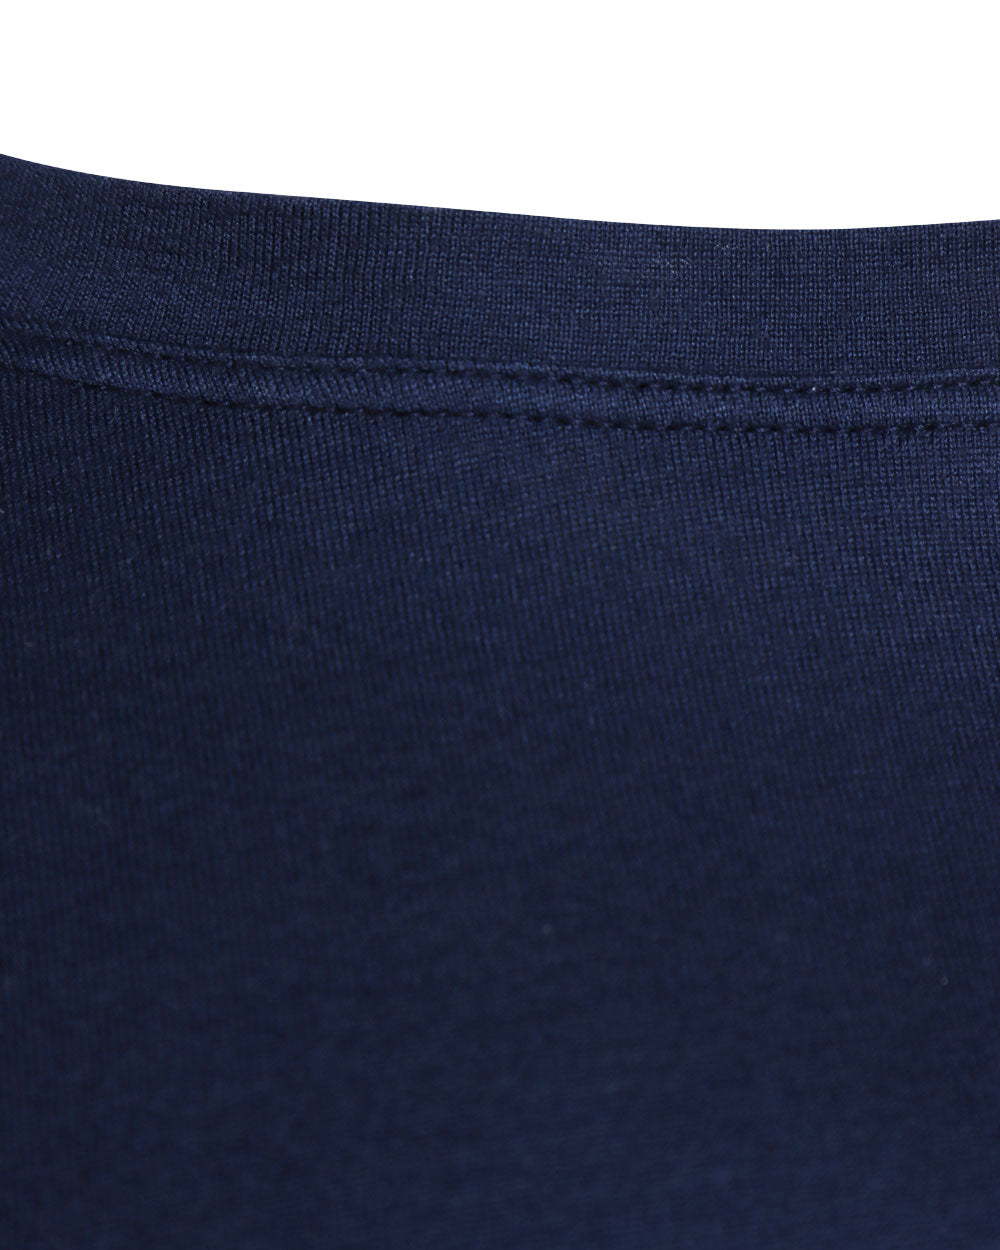 Blue Cotton Blend Short Sleeve T-Shirt